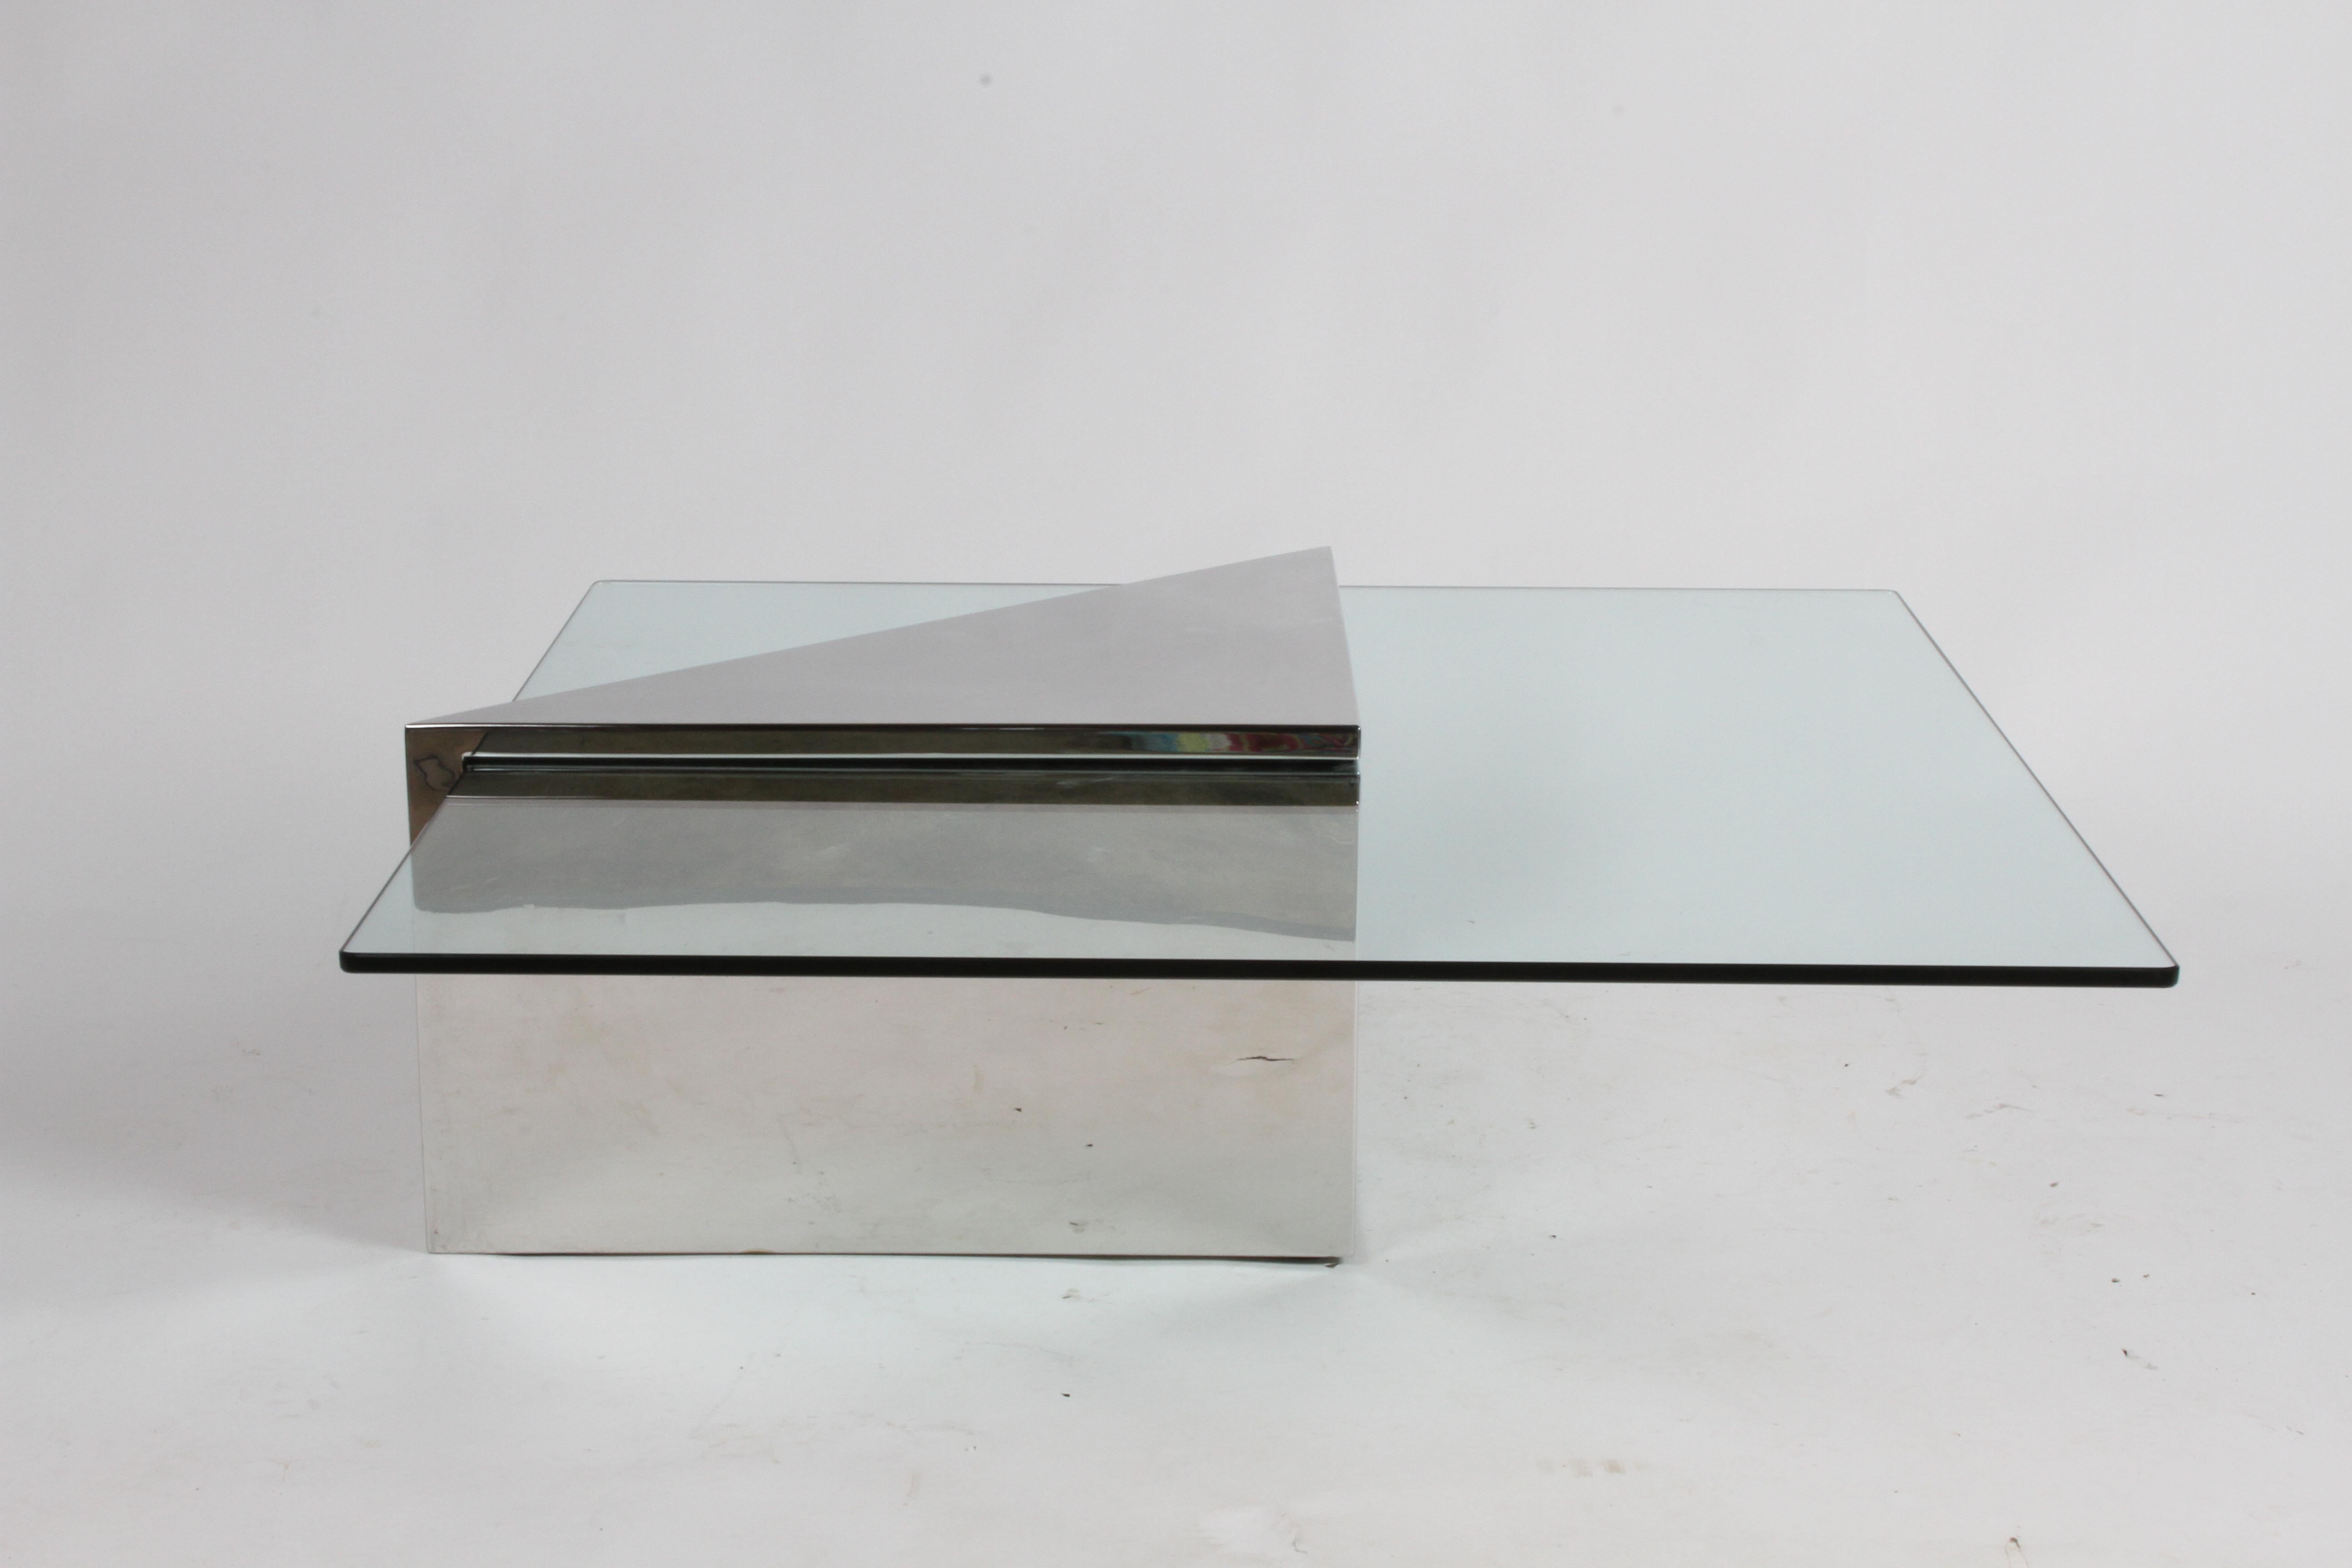 Triform Couchtisch, entworfen von J. Wade Beam für Brueton, ca. 1980er Jahre, mit einem dreieckigen Sockel aus poliertem Edelstahl und einer quadratischen Glasplatte. Die Oberseite des dreieckigen Sockels weist einige Oberflächenkratzer auf, da er